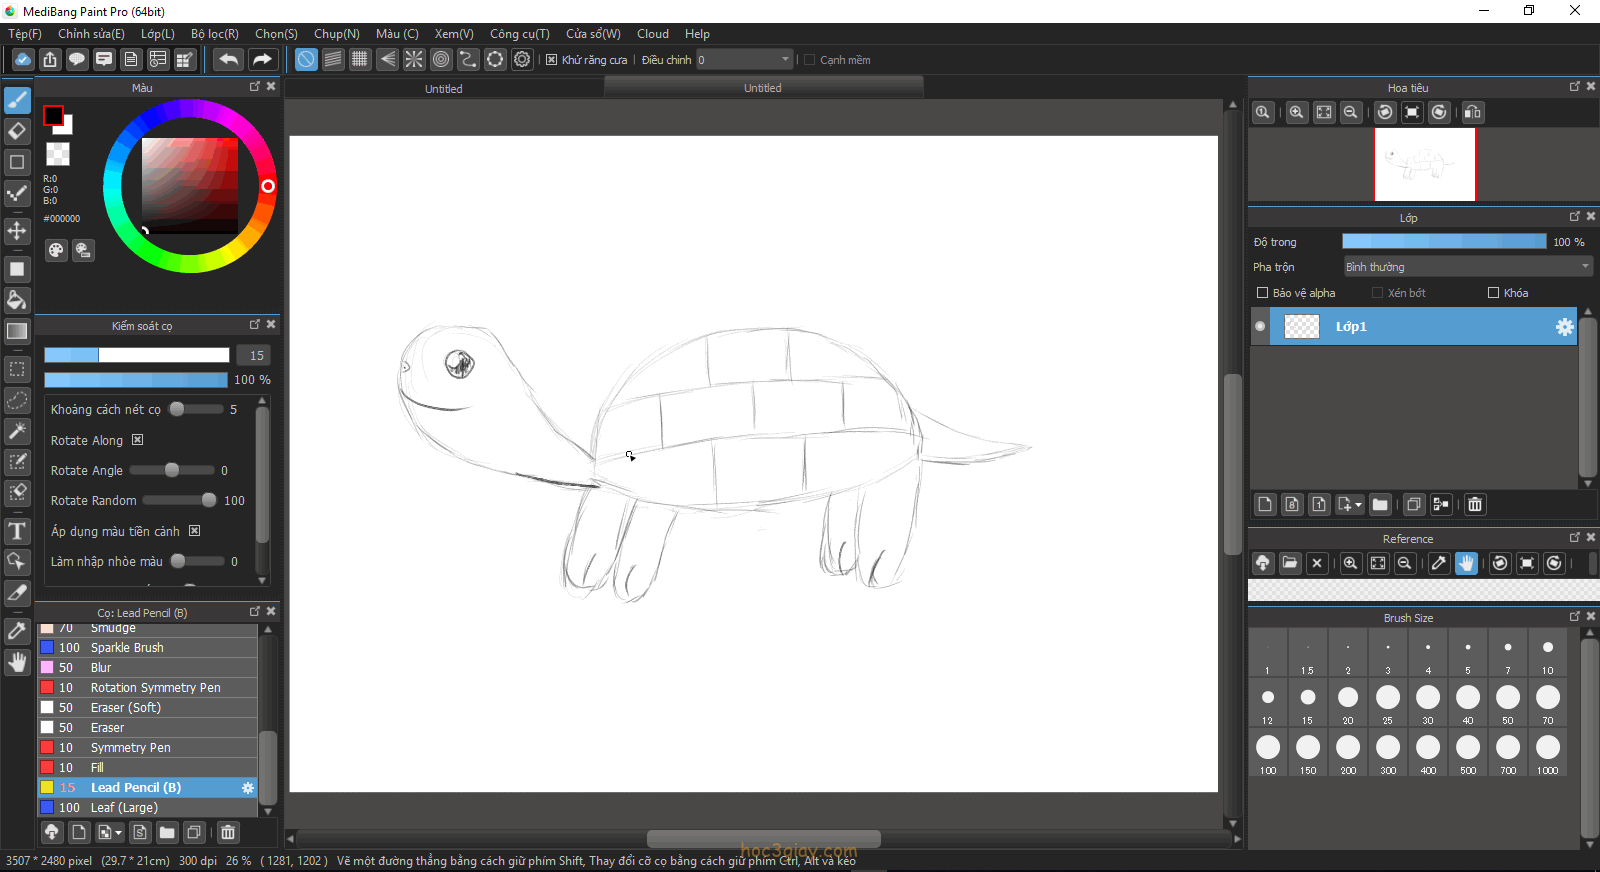 Bạn muốn học cách vẽ con rùa nhanh chóng chỉ trong 3 giây? Hãy xem video này để biết cách vẽ đơn giản và dễ nhớ trong thời gian ngắn nhất. Qua đó, bạn sẽ có kỹ năng vẽ sáng tạo và vui nhộn.